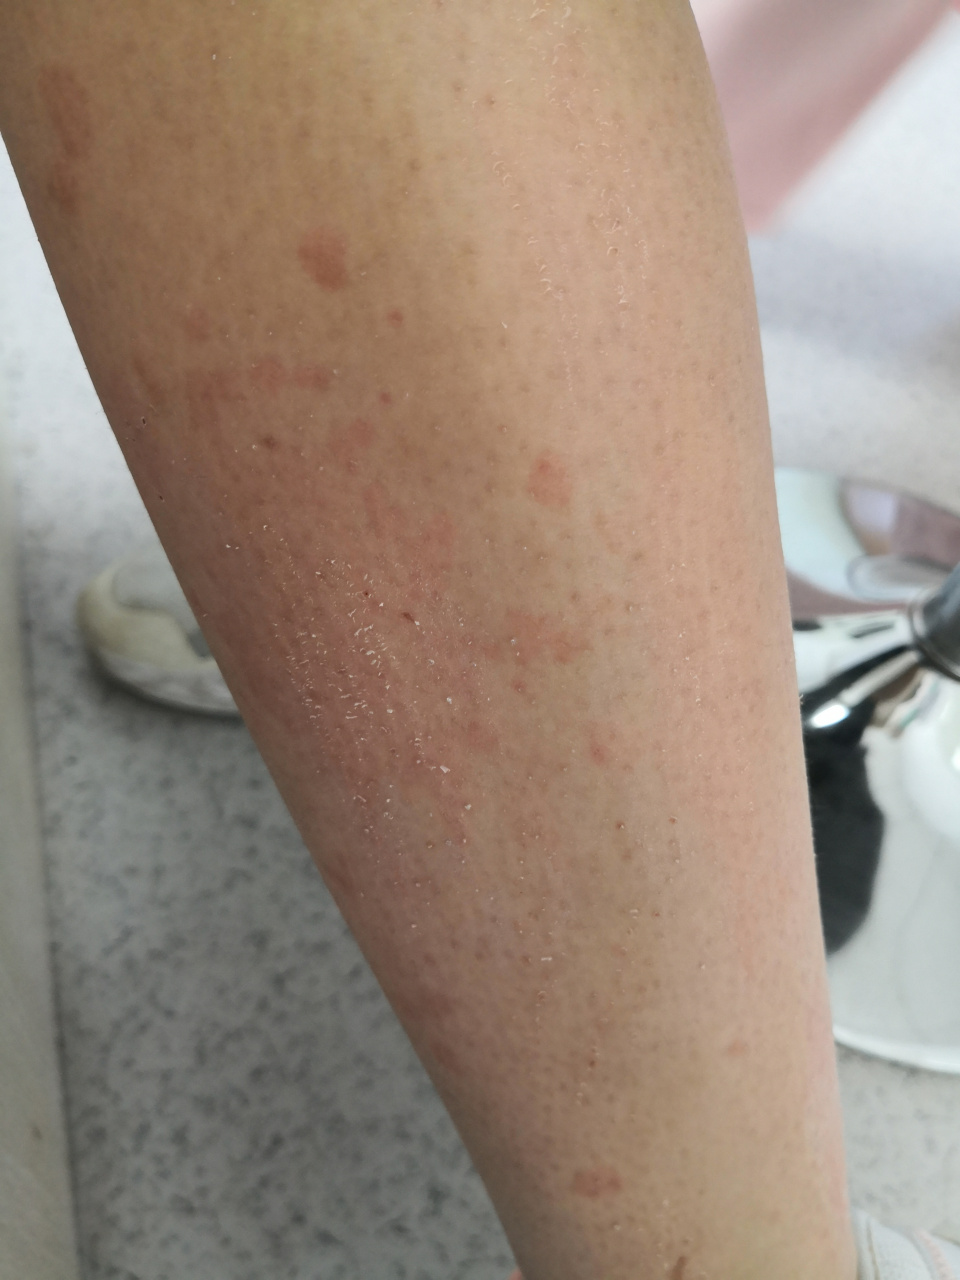 暗红色,考虑头孢类药物过敏导致的荨麻疹型药疹